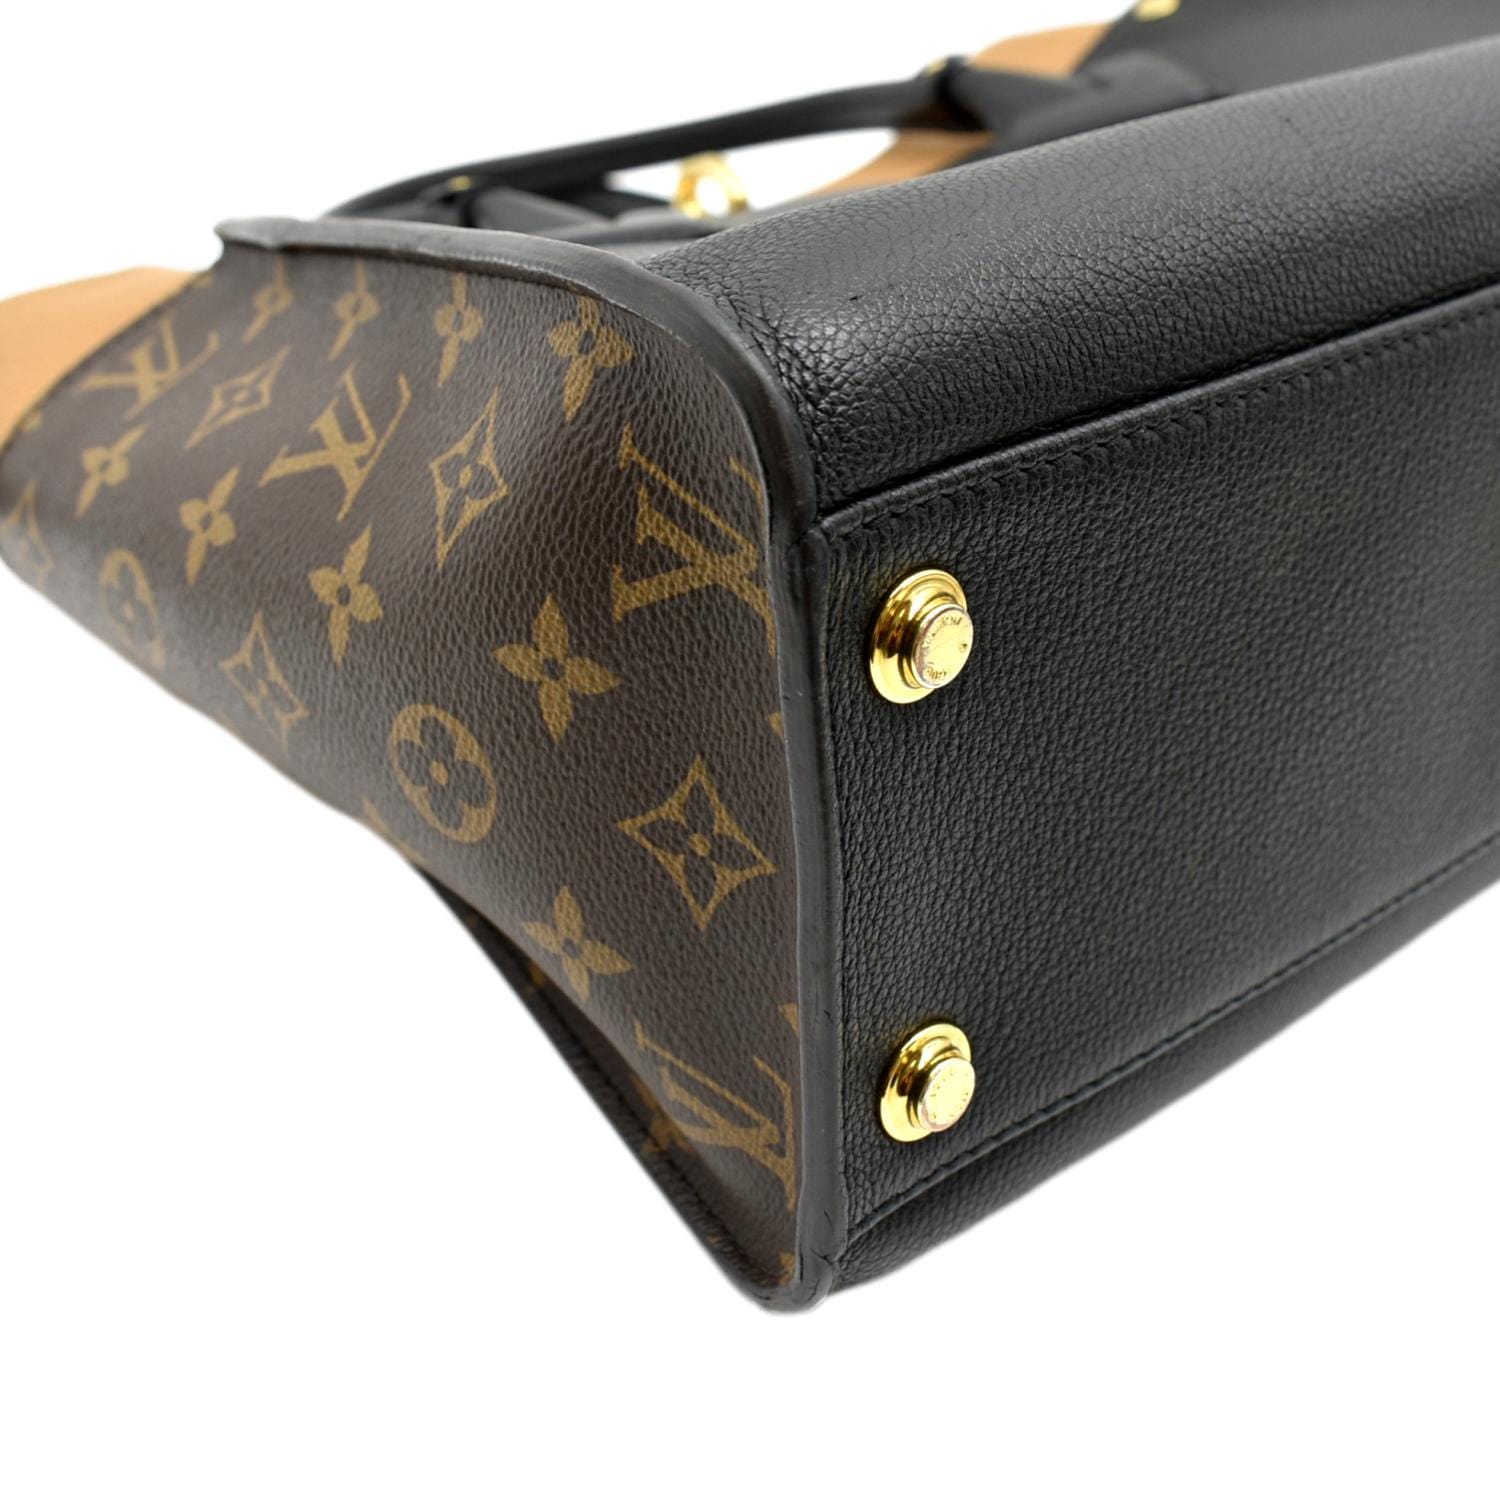 Louis Vuitton Black Calfskin & Monogram Canvas Double V Handbag